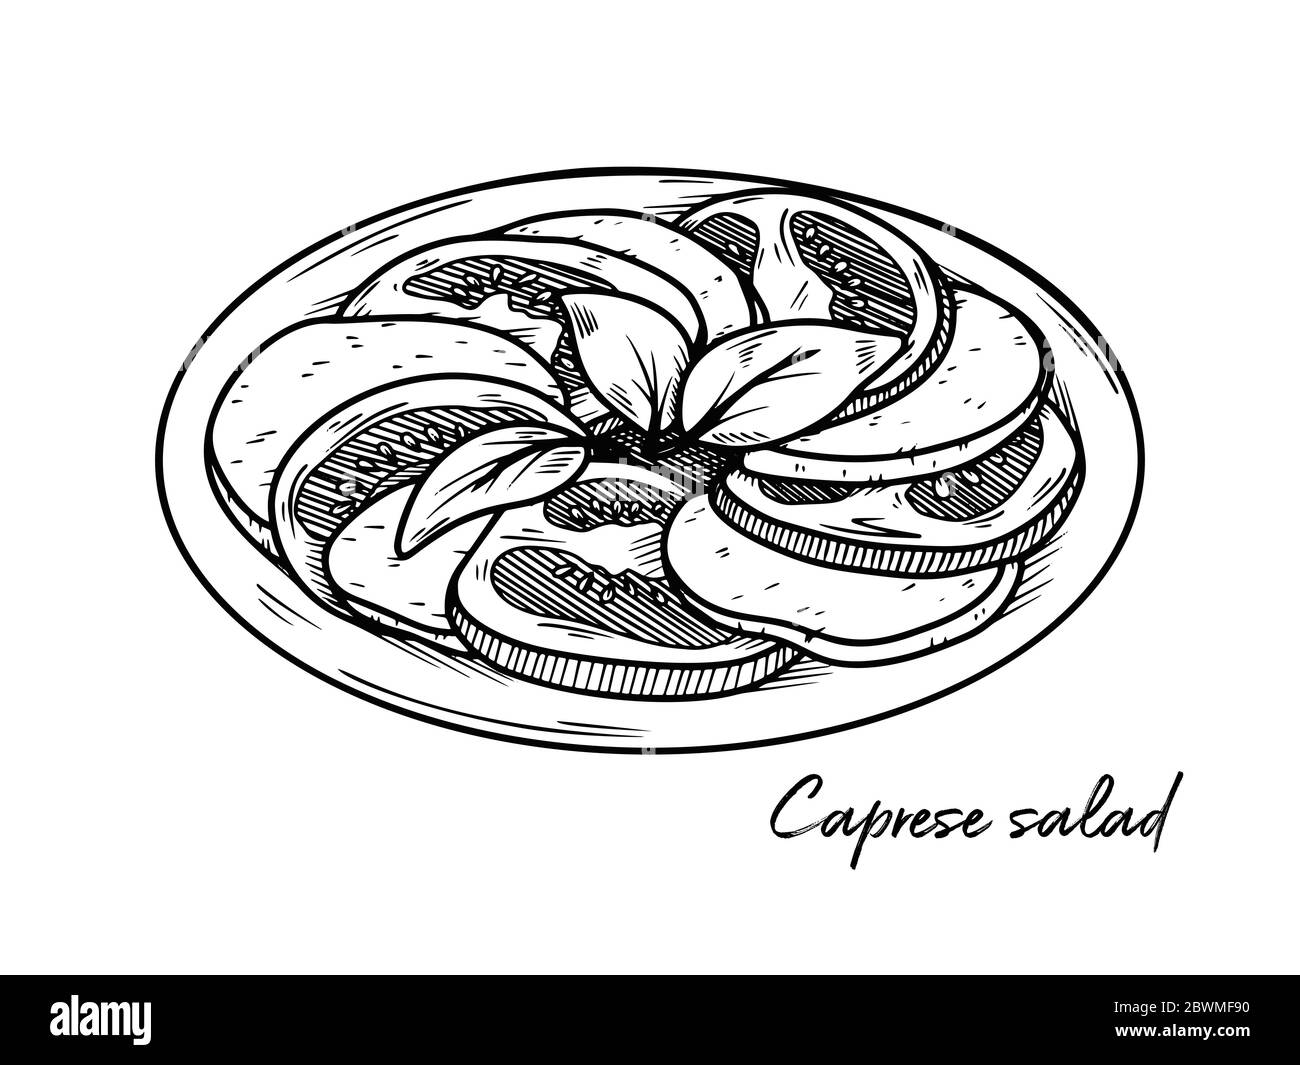 Salade Caprese isolée sur fond blanc. Faites des croquis de plats italiens. Illustration vectorielle dans le style d'esquisse. Illustration de Vecteur